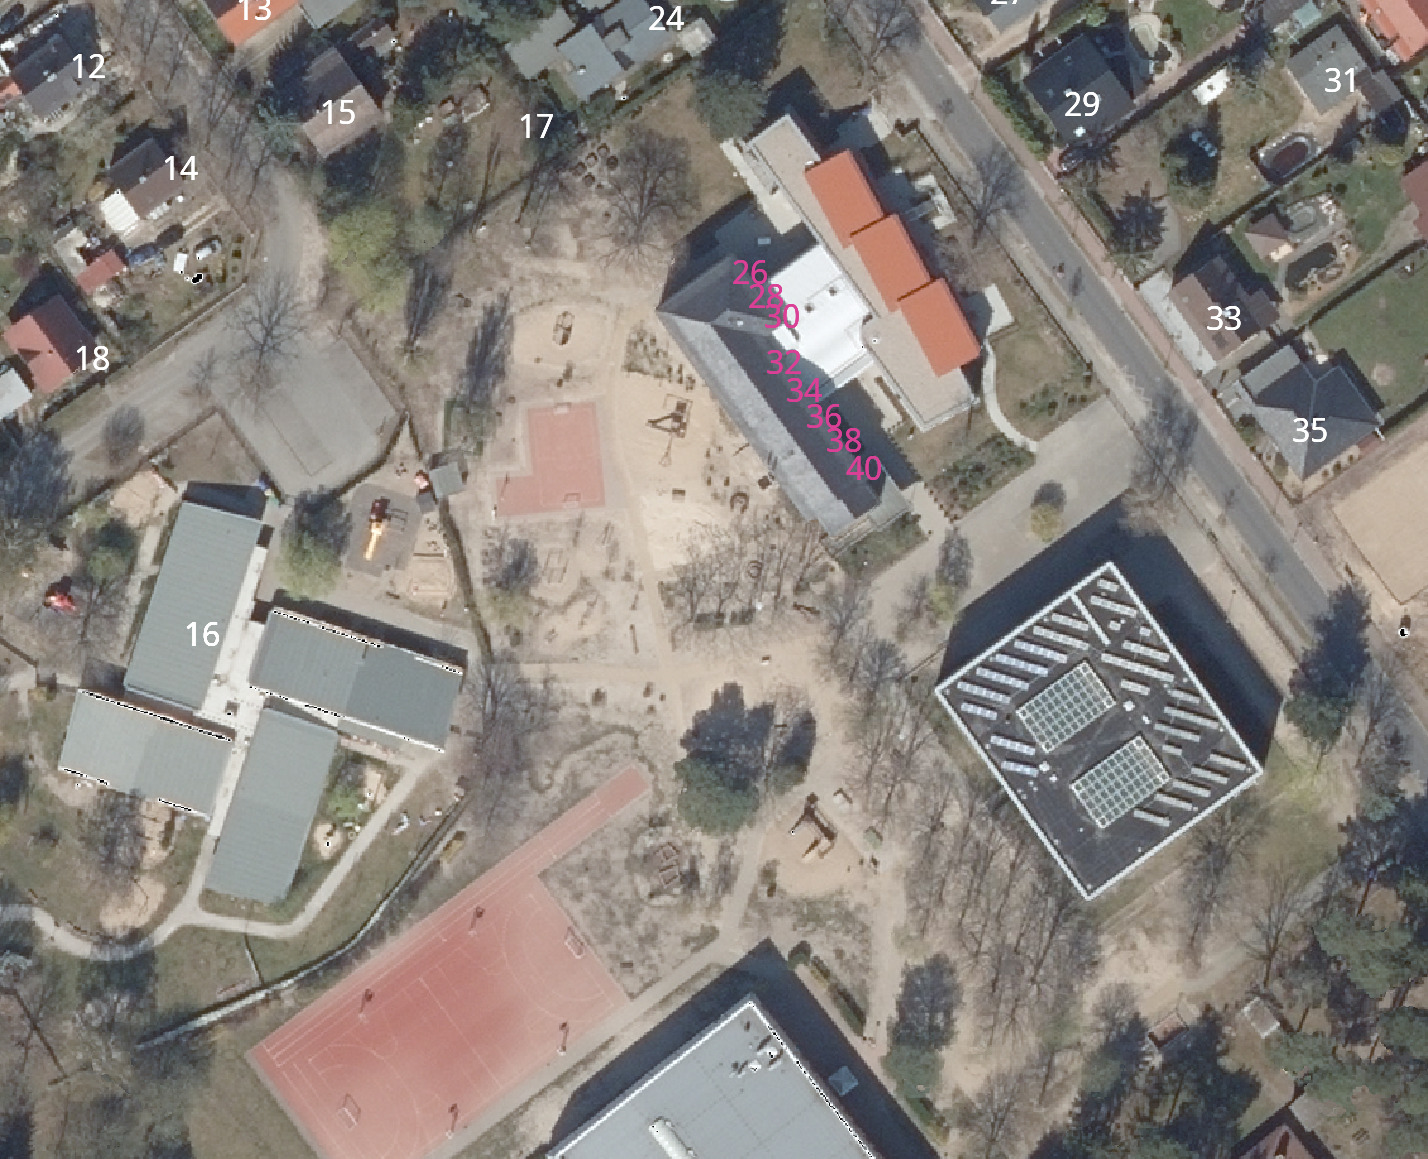 Luftbild eines Schulgeländes mit mehreren Hausnummern